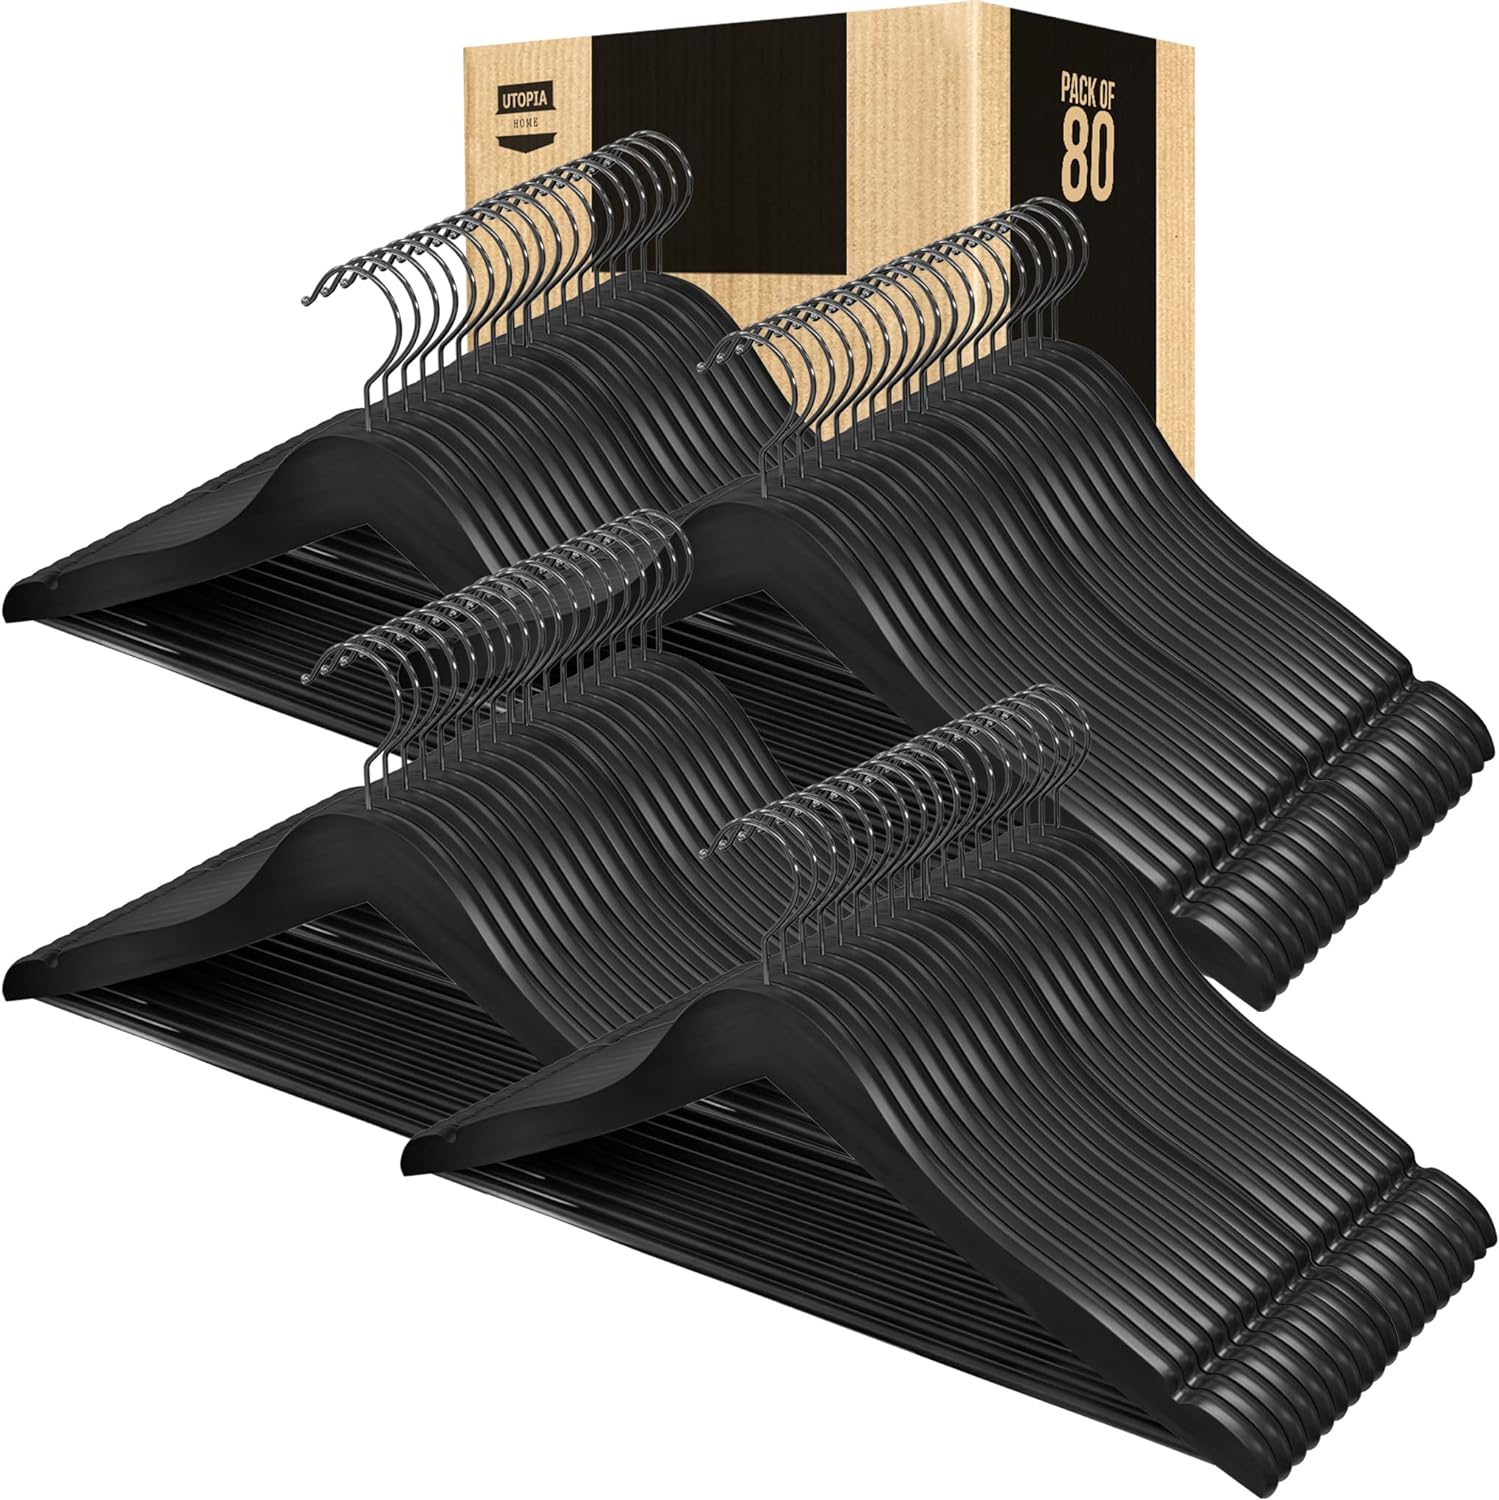 https://bigbigmart.com/wp-content/uploads/2023/12/Utopia-Home-Premium-Wooden-Hangers-80-Pack-Durable-Slim-Coat-Hanger-Suit-Hangers-with-360-Degree-Rotatable-Hook-Wood-Hangers-with-Shoulder-Grooves-Black-Color.jpg